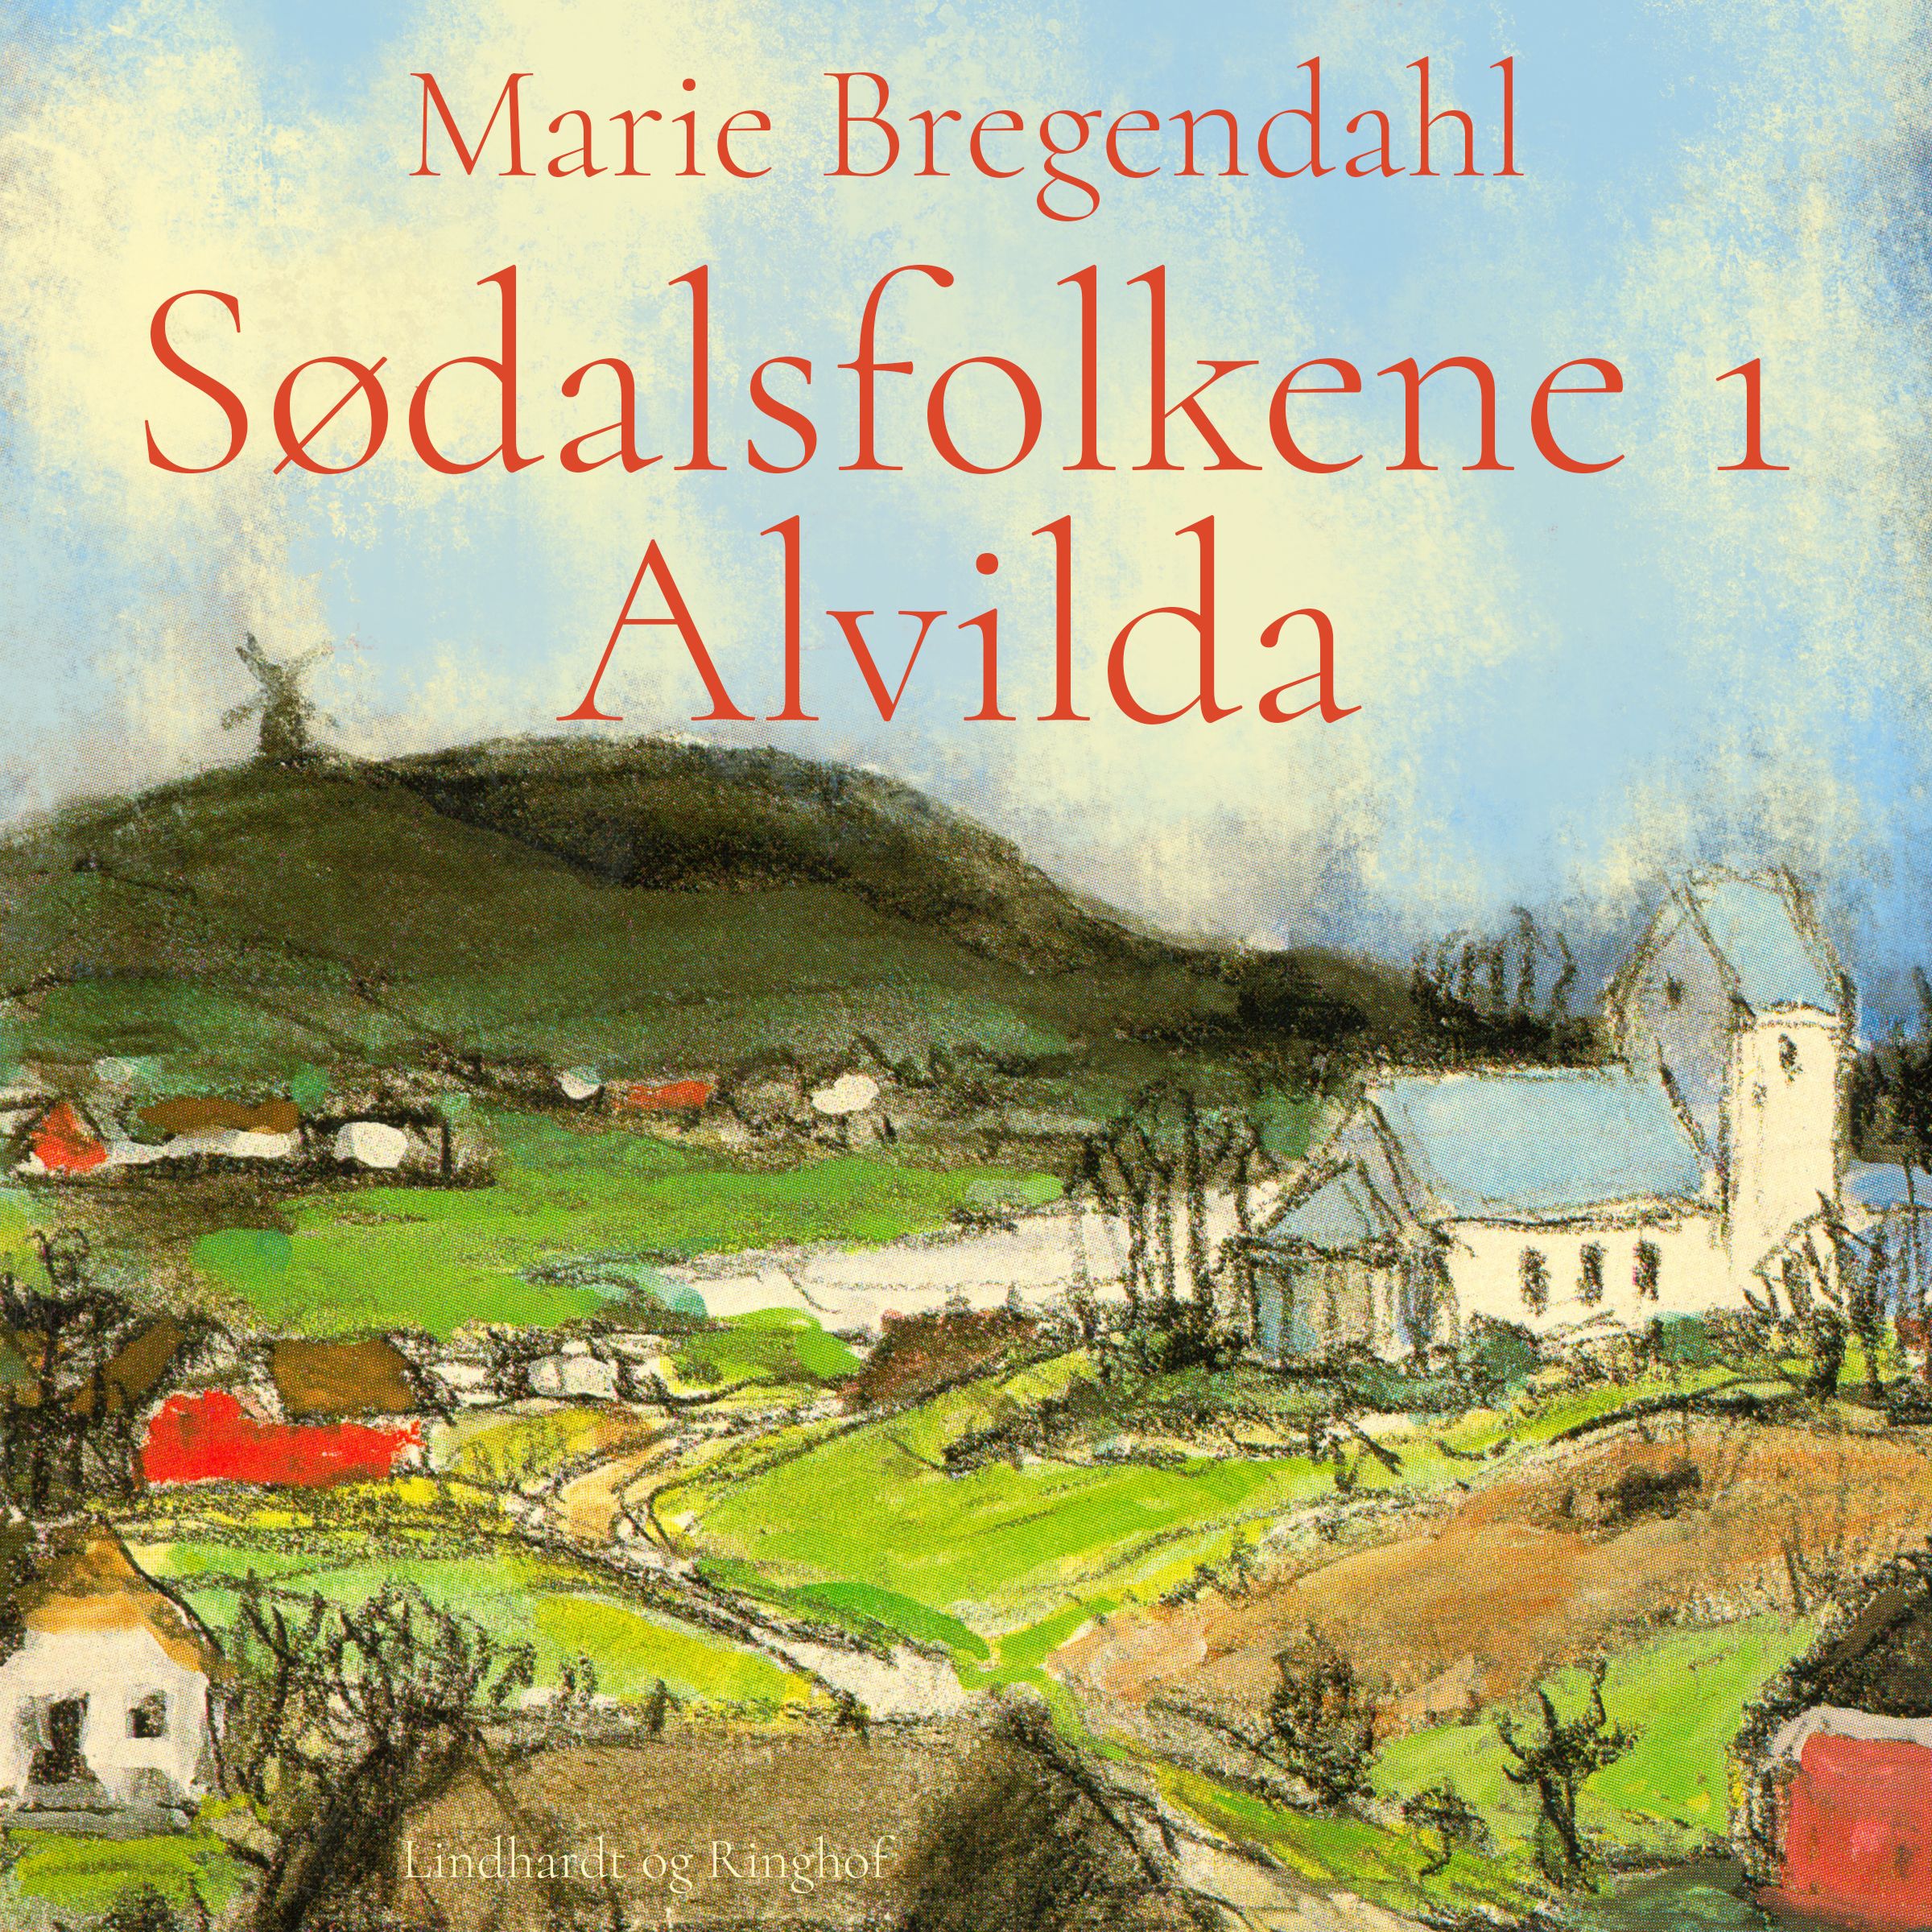 Sødalsfolkene - Alvilda, ljudbok av Marie Bregendahl